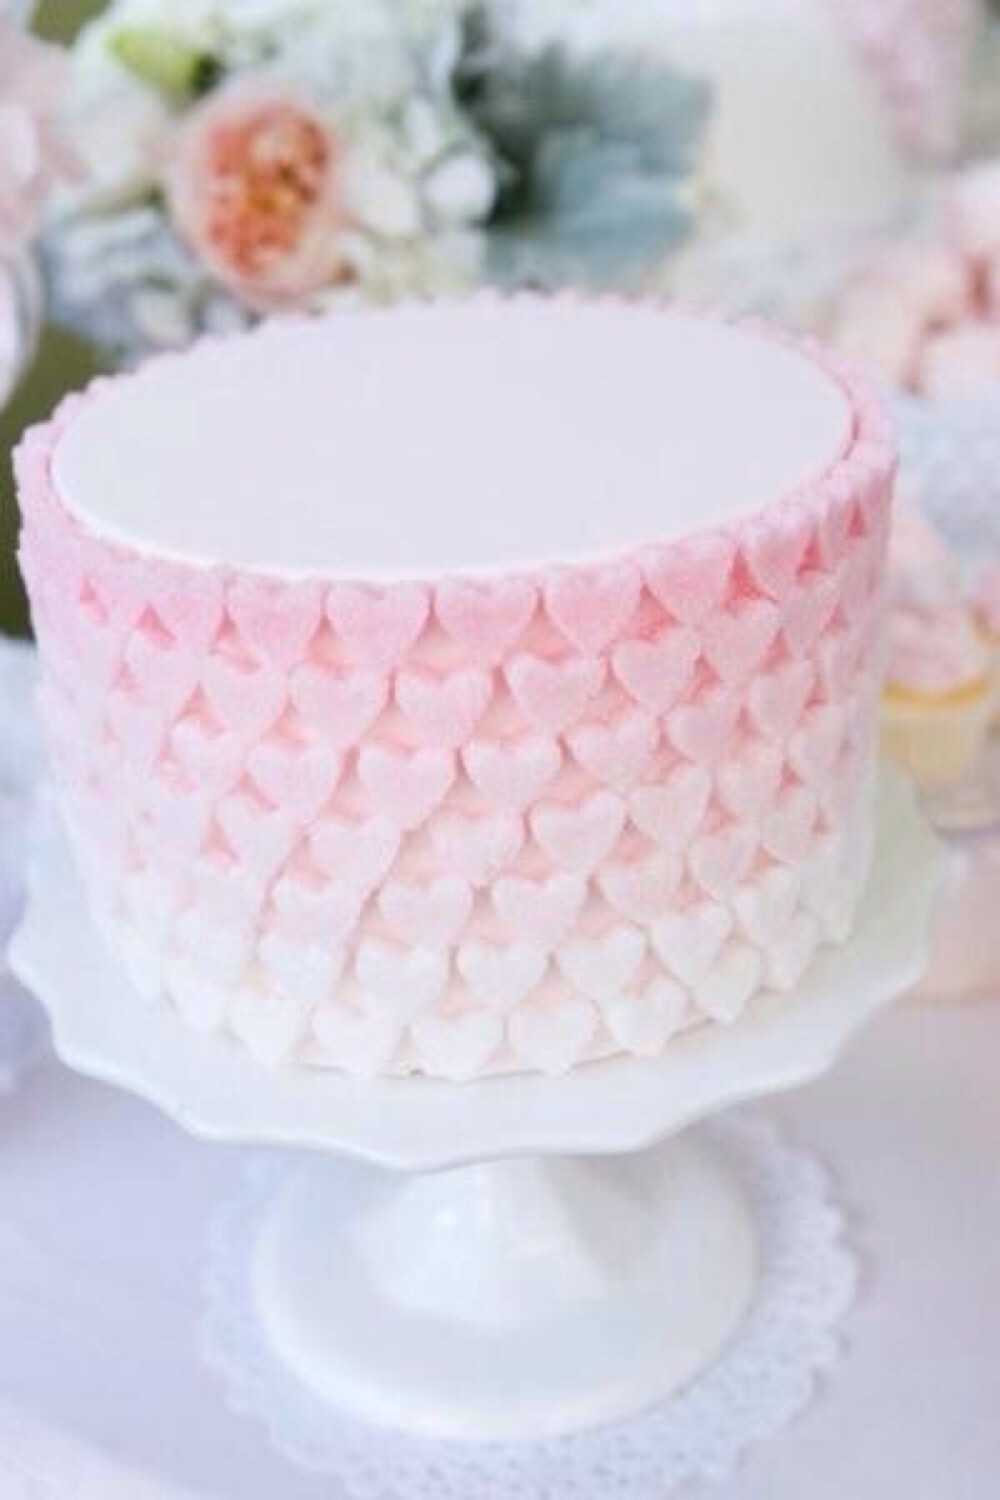 爱心翻糖蛋糕 将不同颜色的翻糖 擀开 用心形模具一个个做出来 放到蛋糕上就可以了